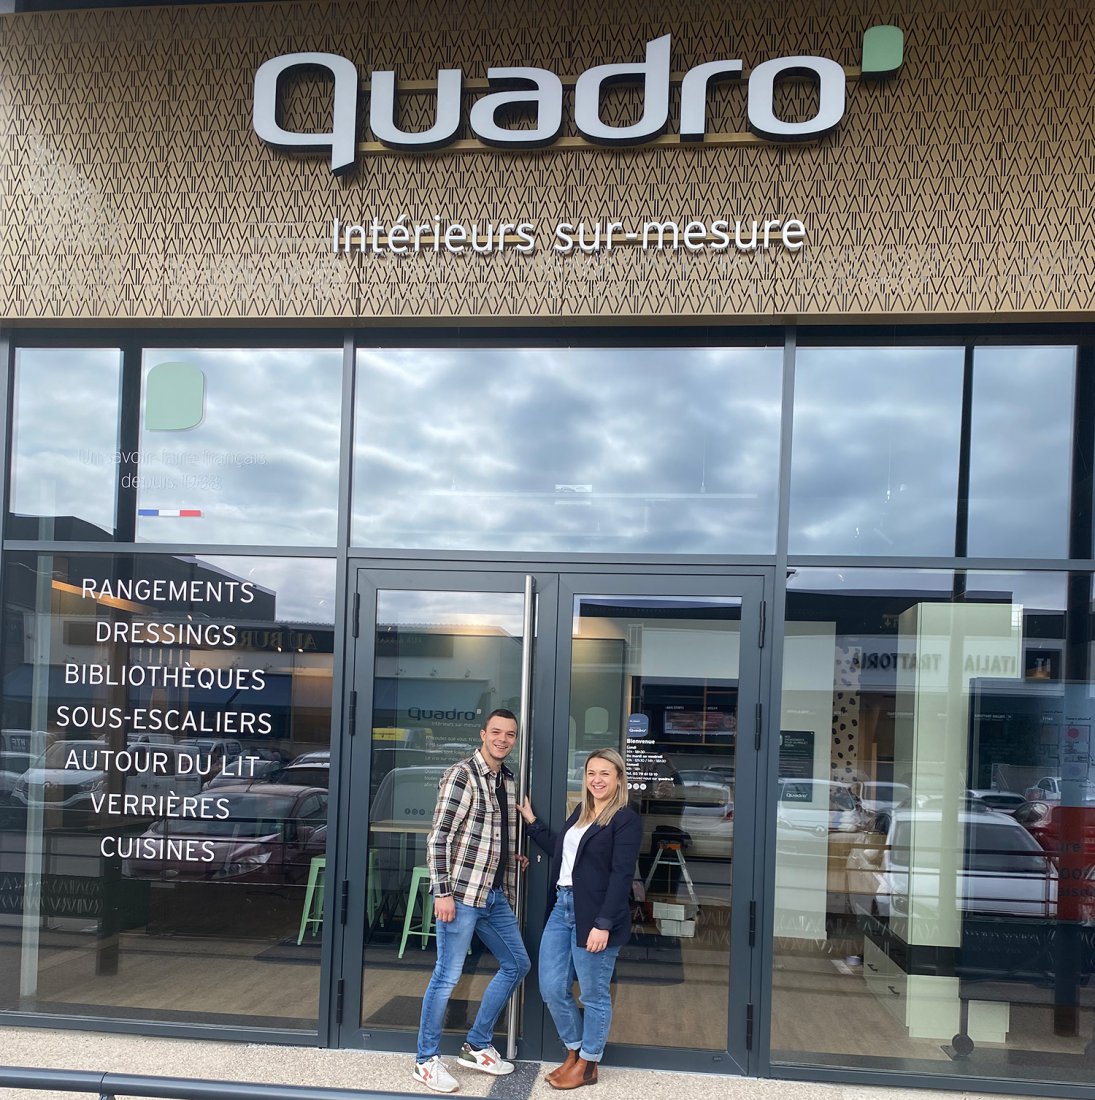 Ouverture dun nouveau magasin Quadro  Chalon-sur-Sane jeudi 7 mars.